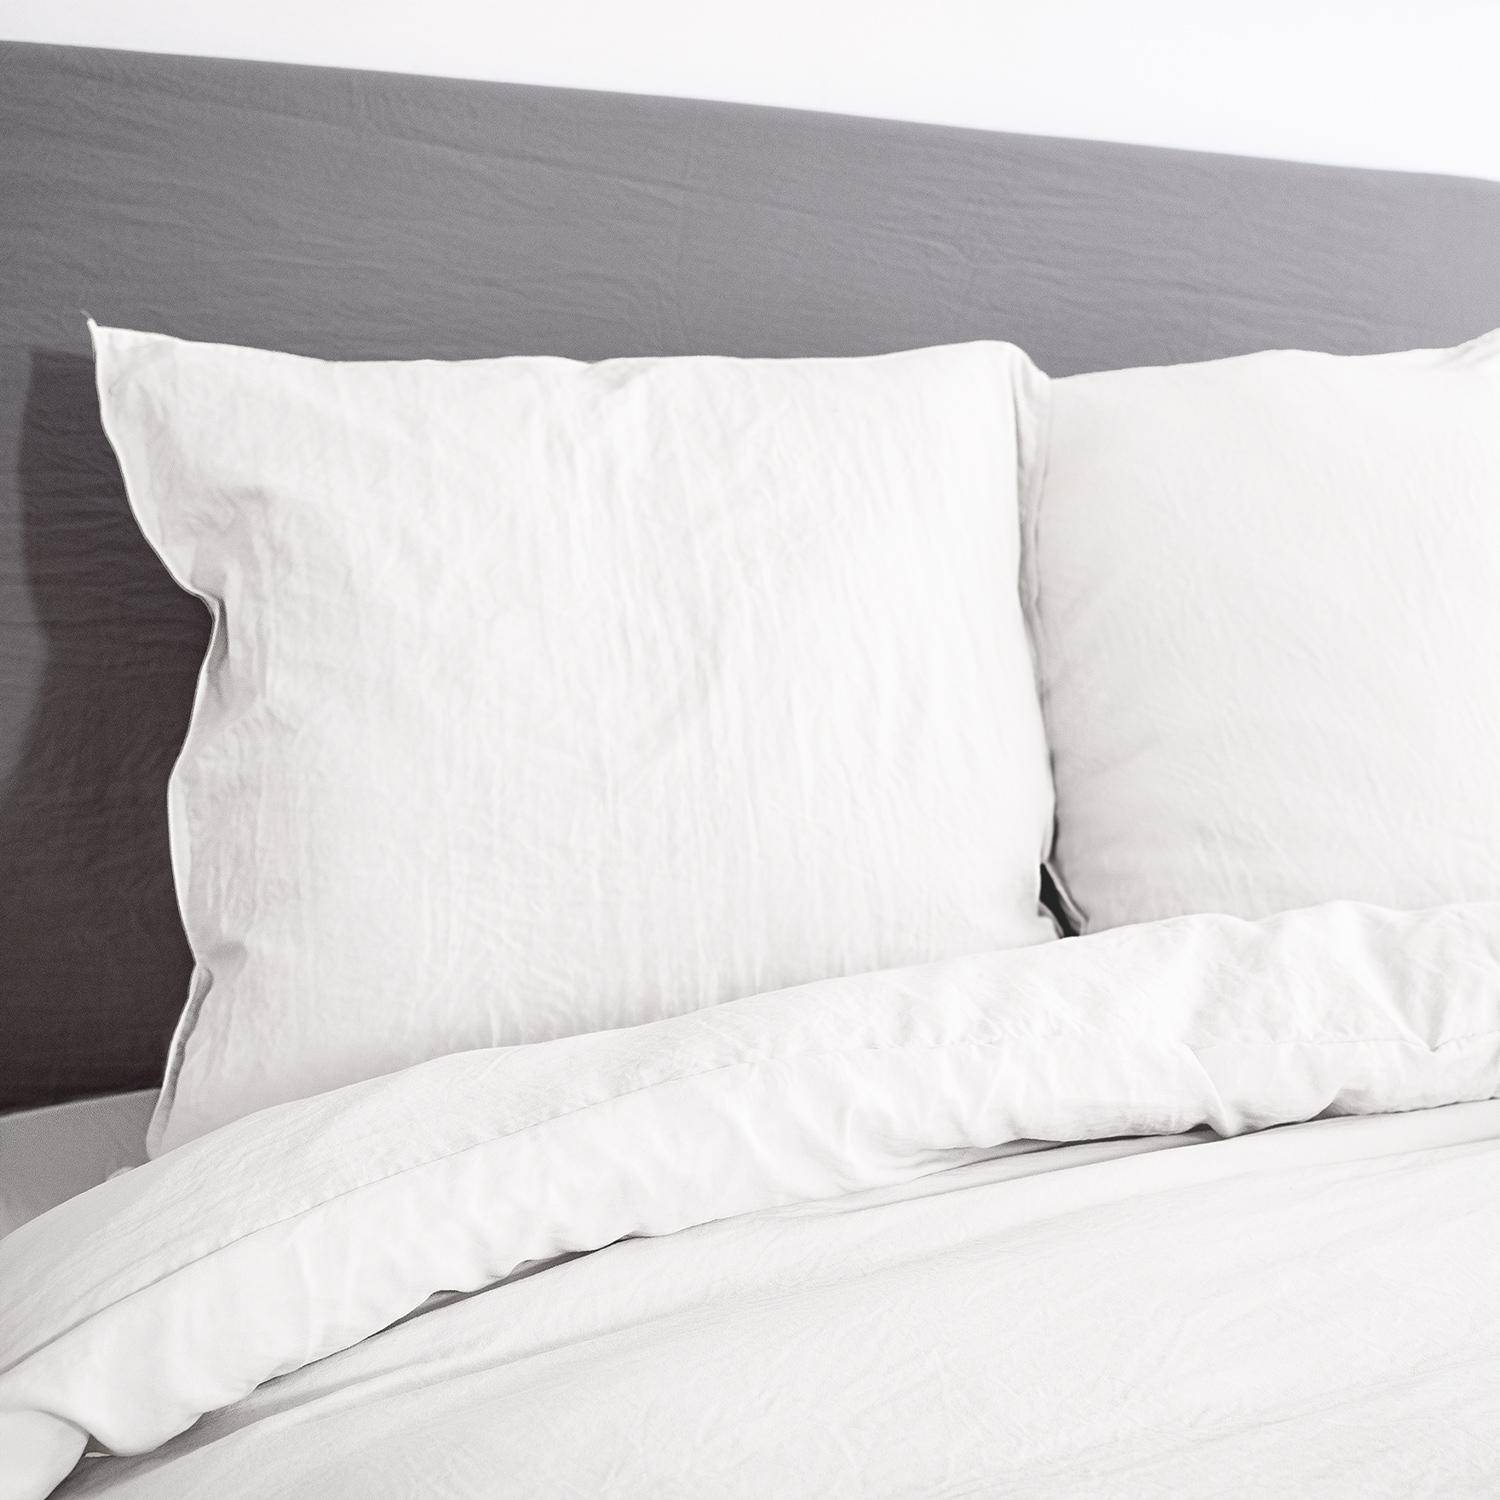 Bettwäsche-Set aus vorgewaschener Mikrofaser in weiß 240 x 220 cm für Doppelbetten, 1 Bettbezug und 2 Kissenbezüge Photo2